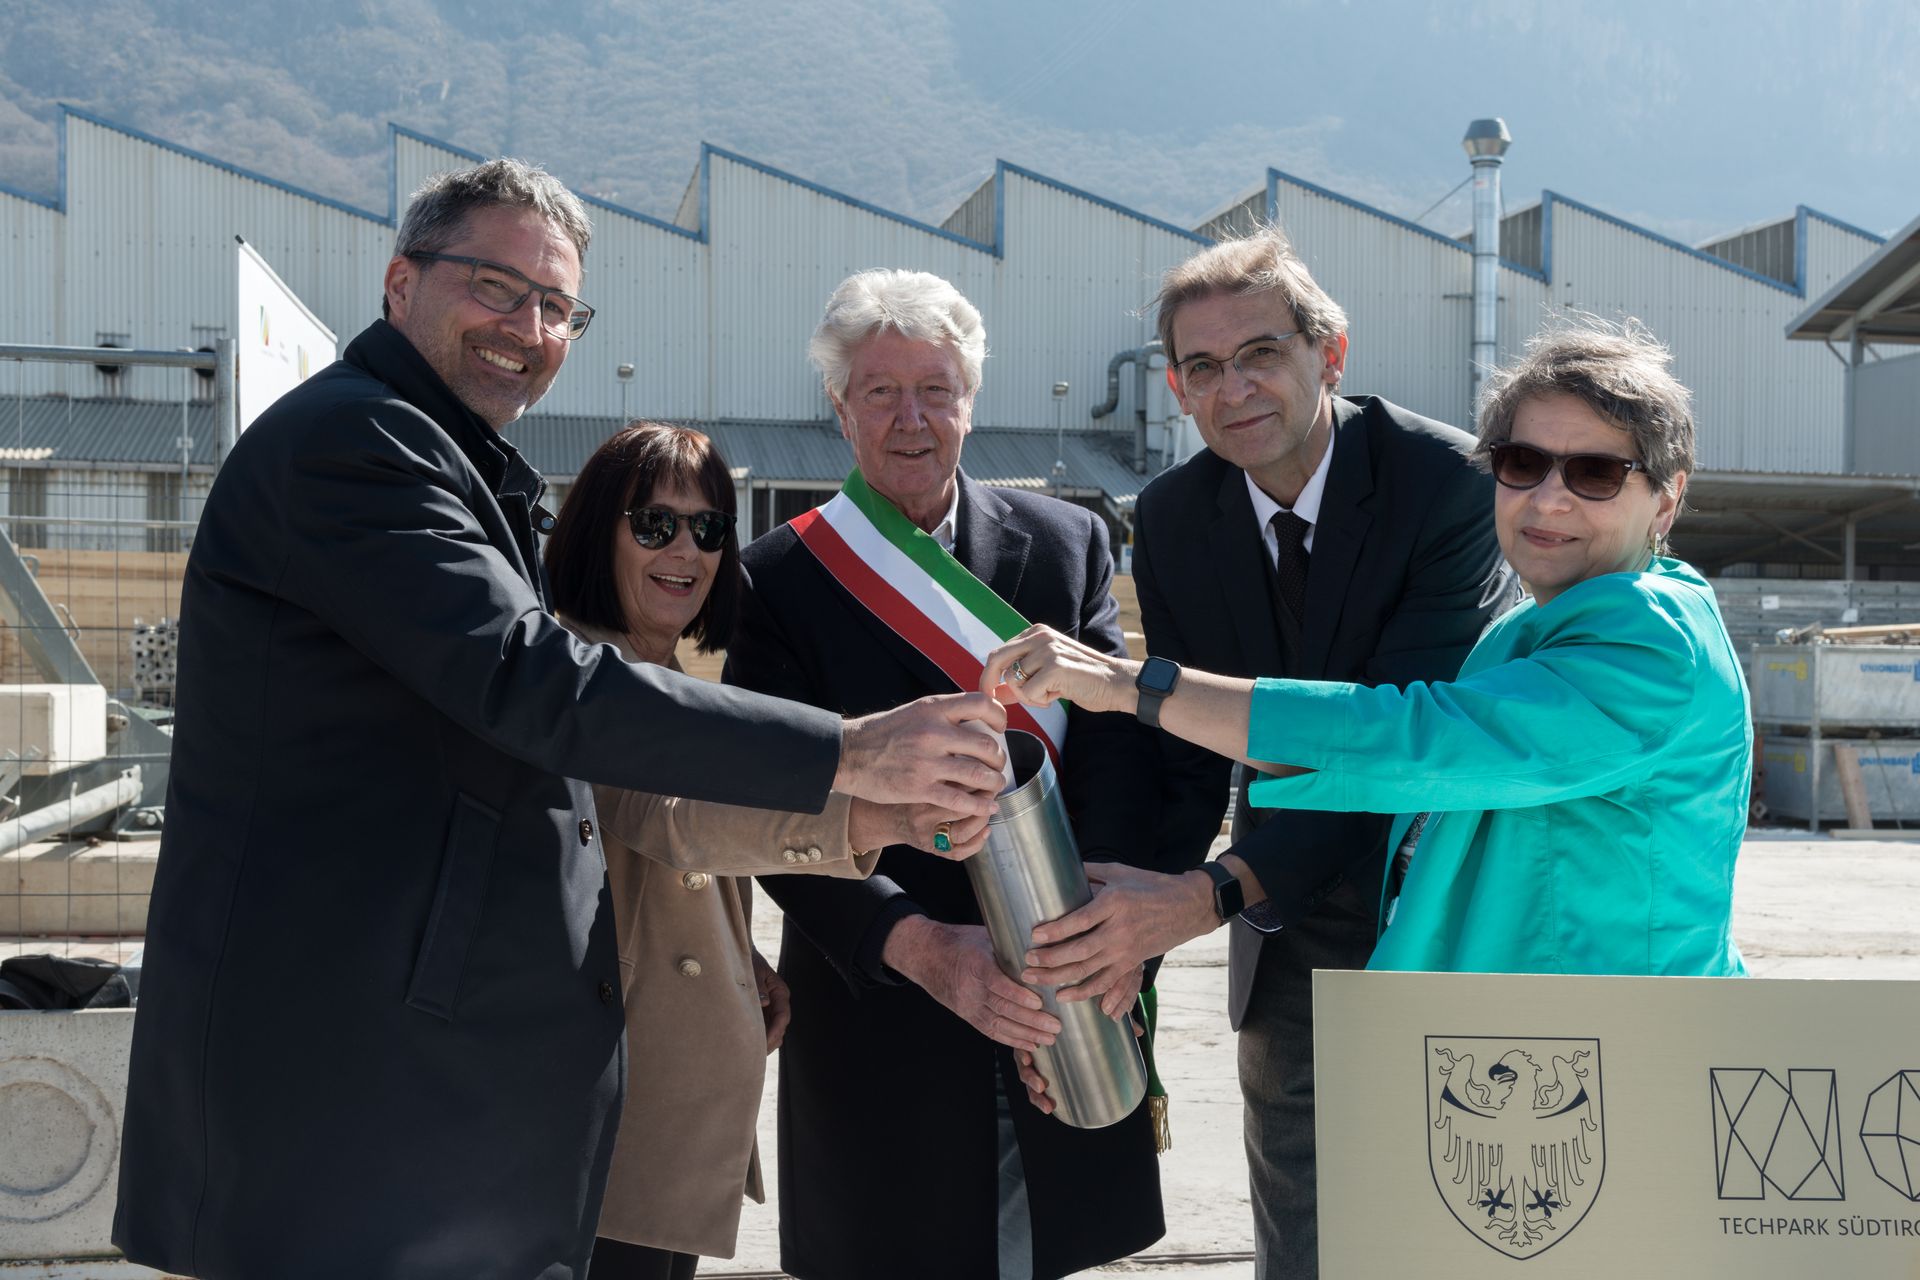 "Peletakan batu fondasi" masa depan Fakultas Teknik Universitas Bebas Bolzano dirayakan pada tanggal 23 Maret di NOI Techpark, di mana distrik inovasi Alto Adige/Südtirol bersiap untuk memasuki dimensi baru